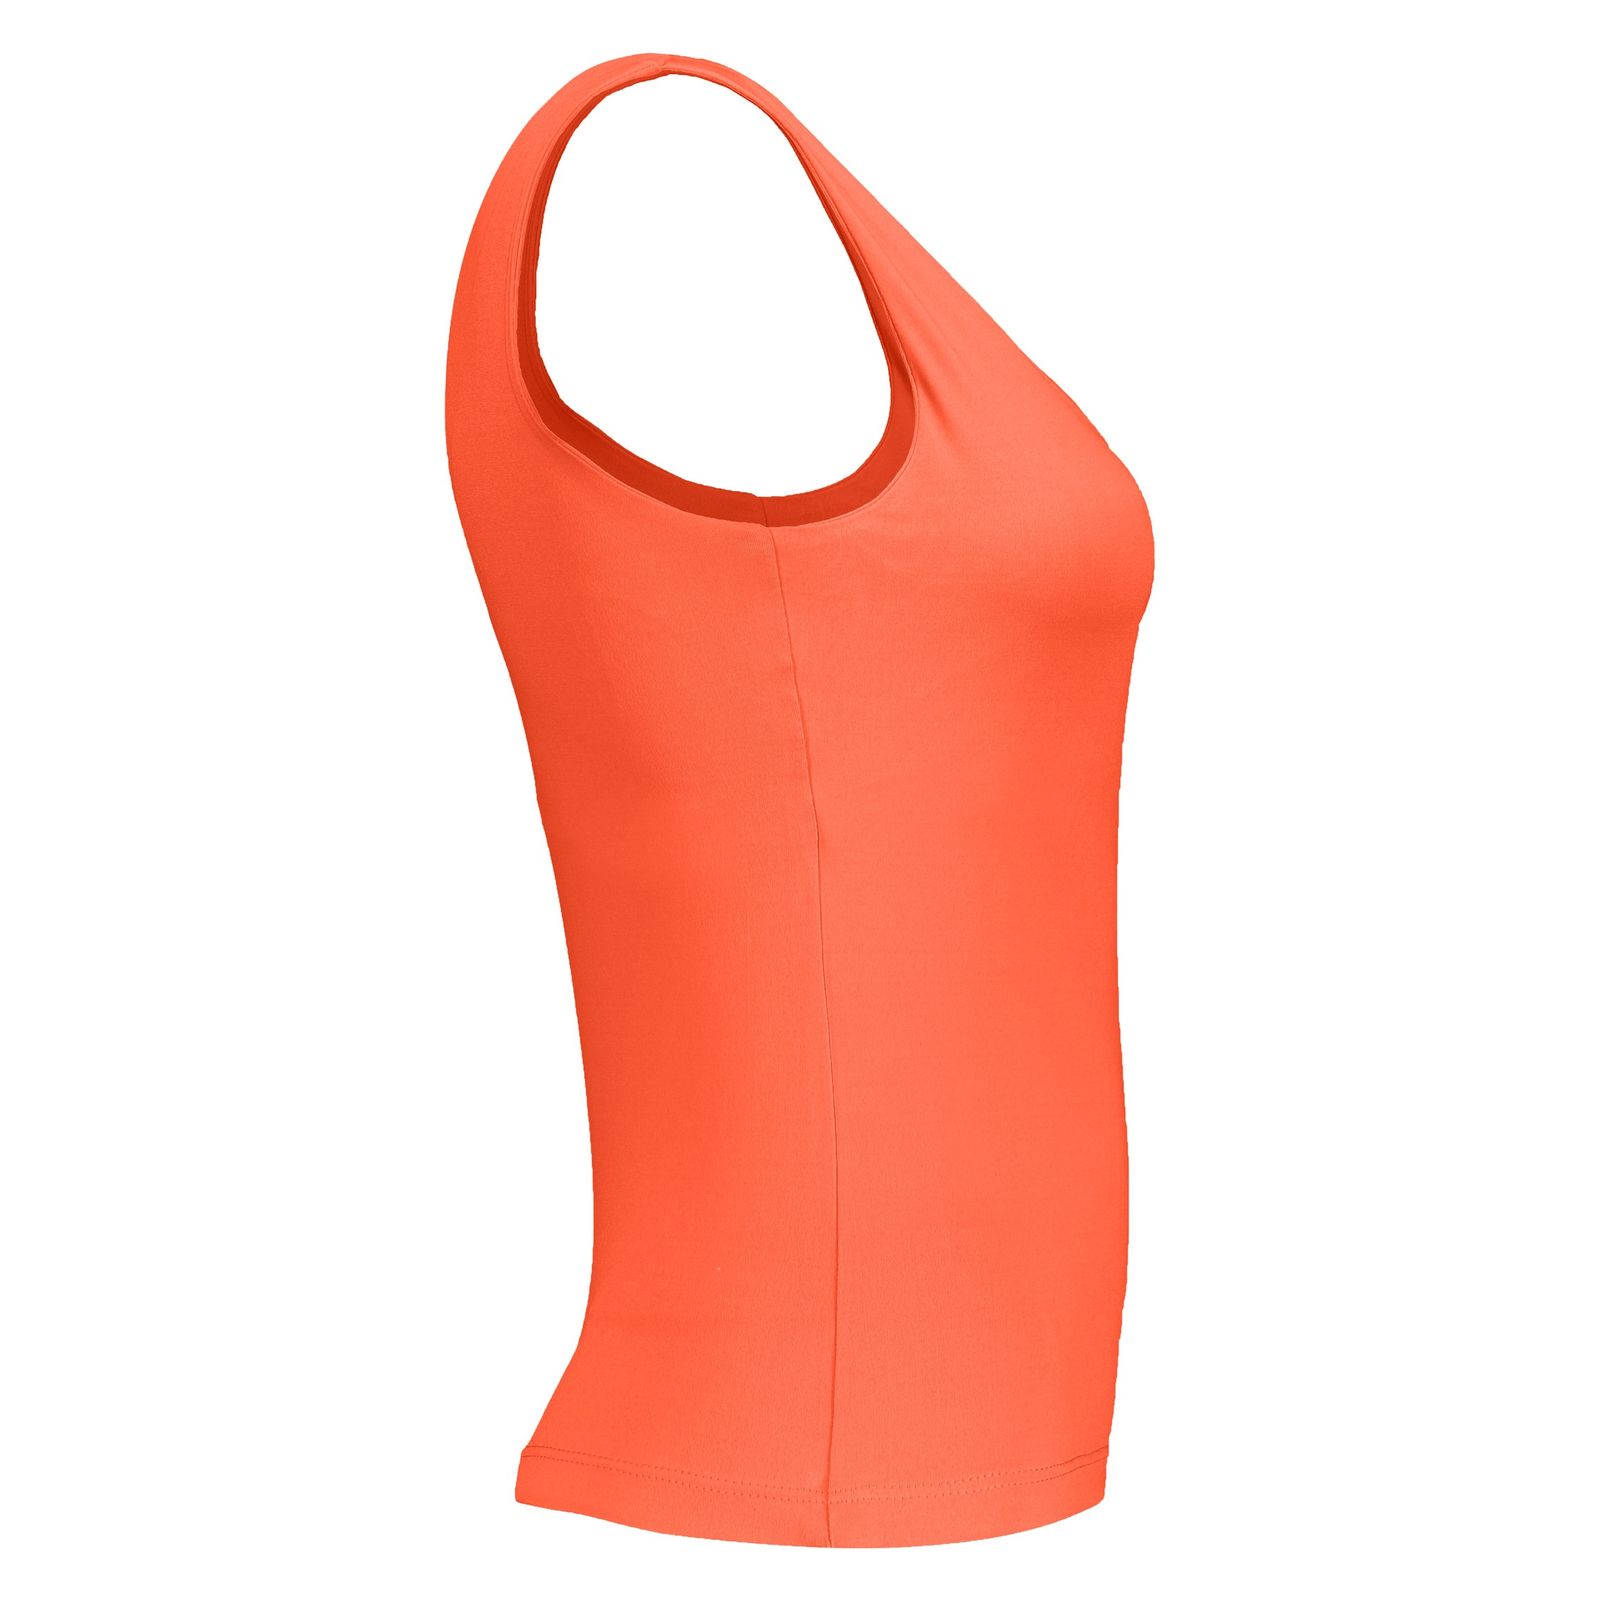 تاپ ورزشی زنانه آر ان اس مدل 2101026-23 - نارنجی - 3